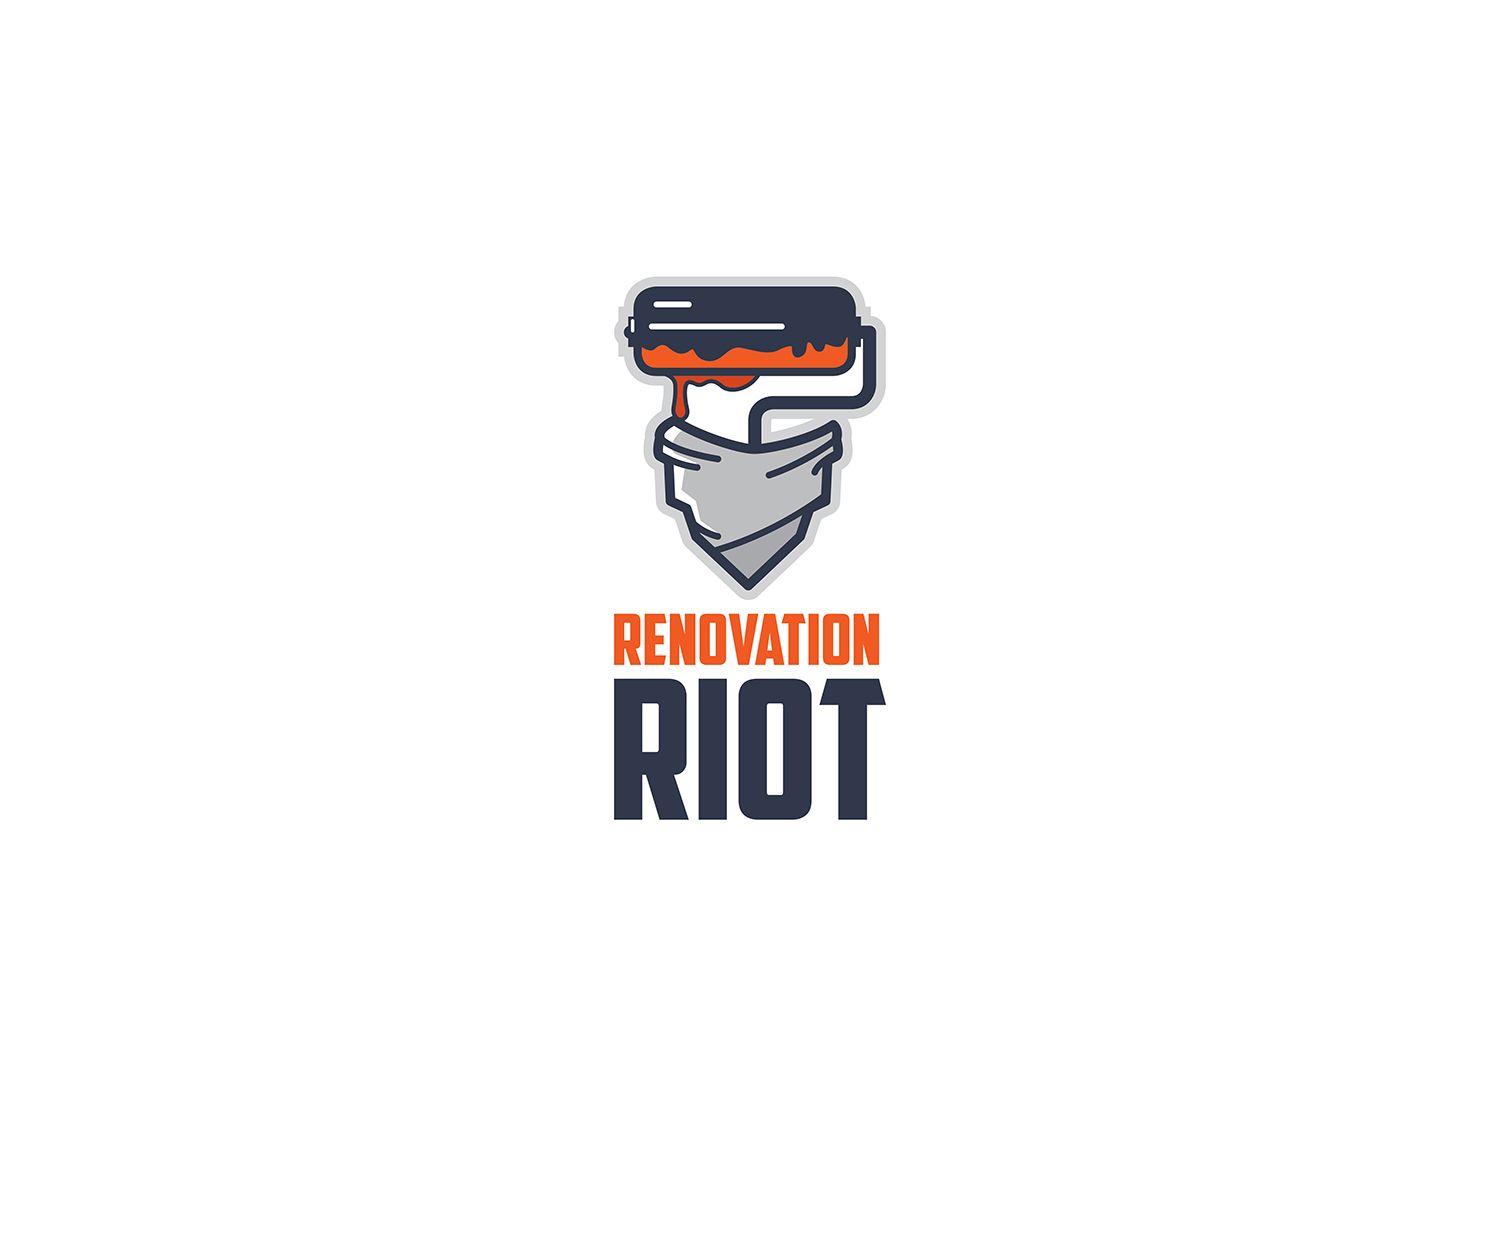 Renovation Company Logo - Professional, Serious, It Company Logo Design for Renovation Riot